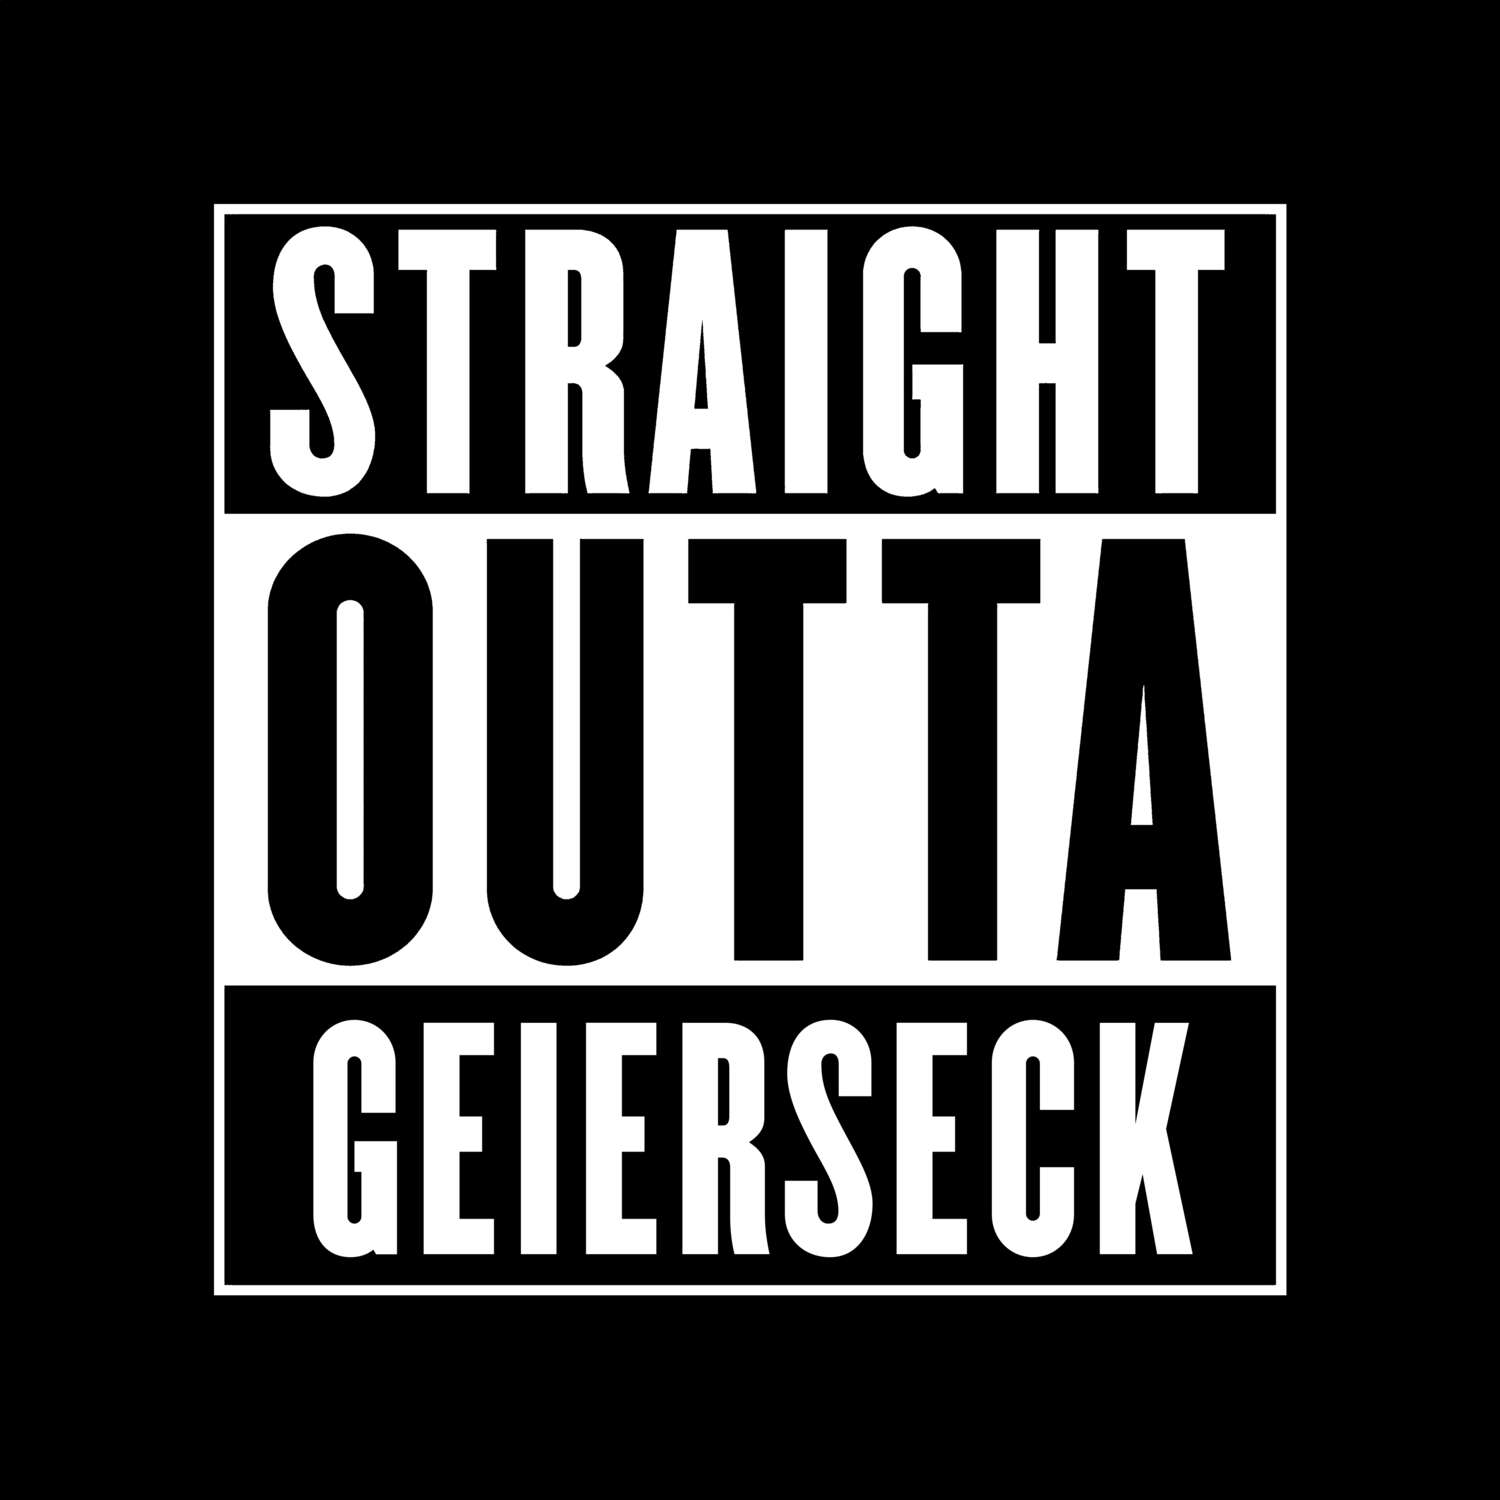 Geierseck T-Shirt »Straight Outta«